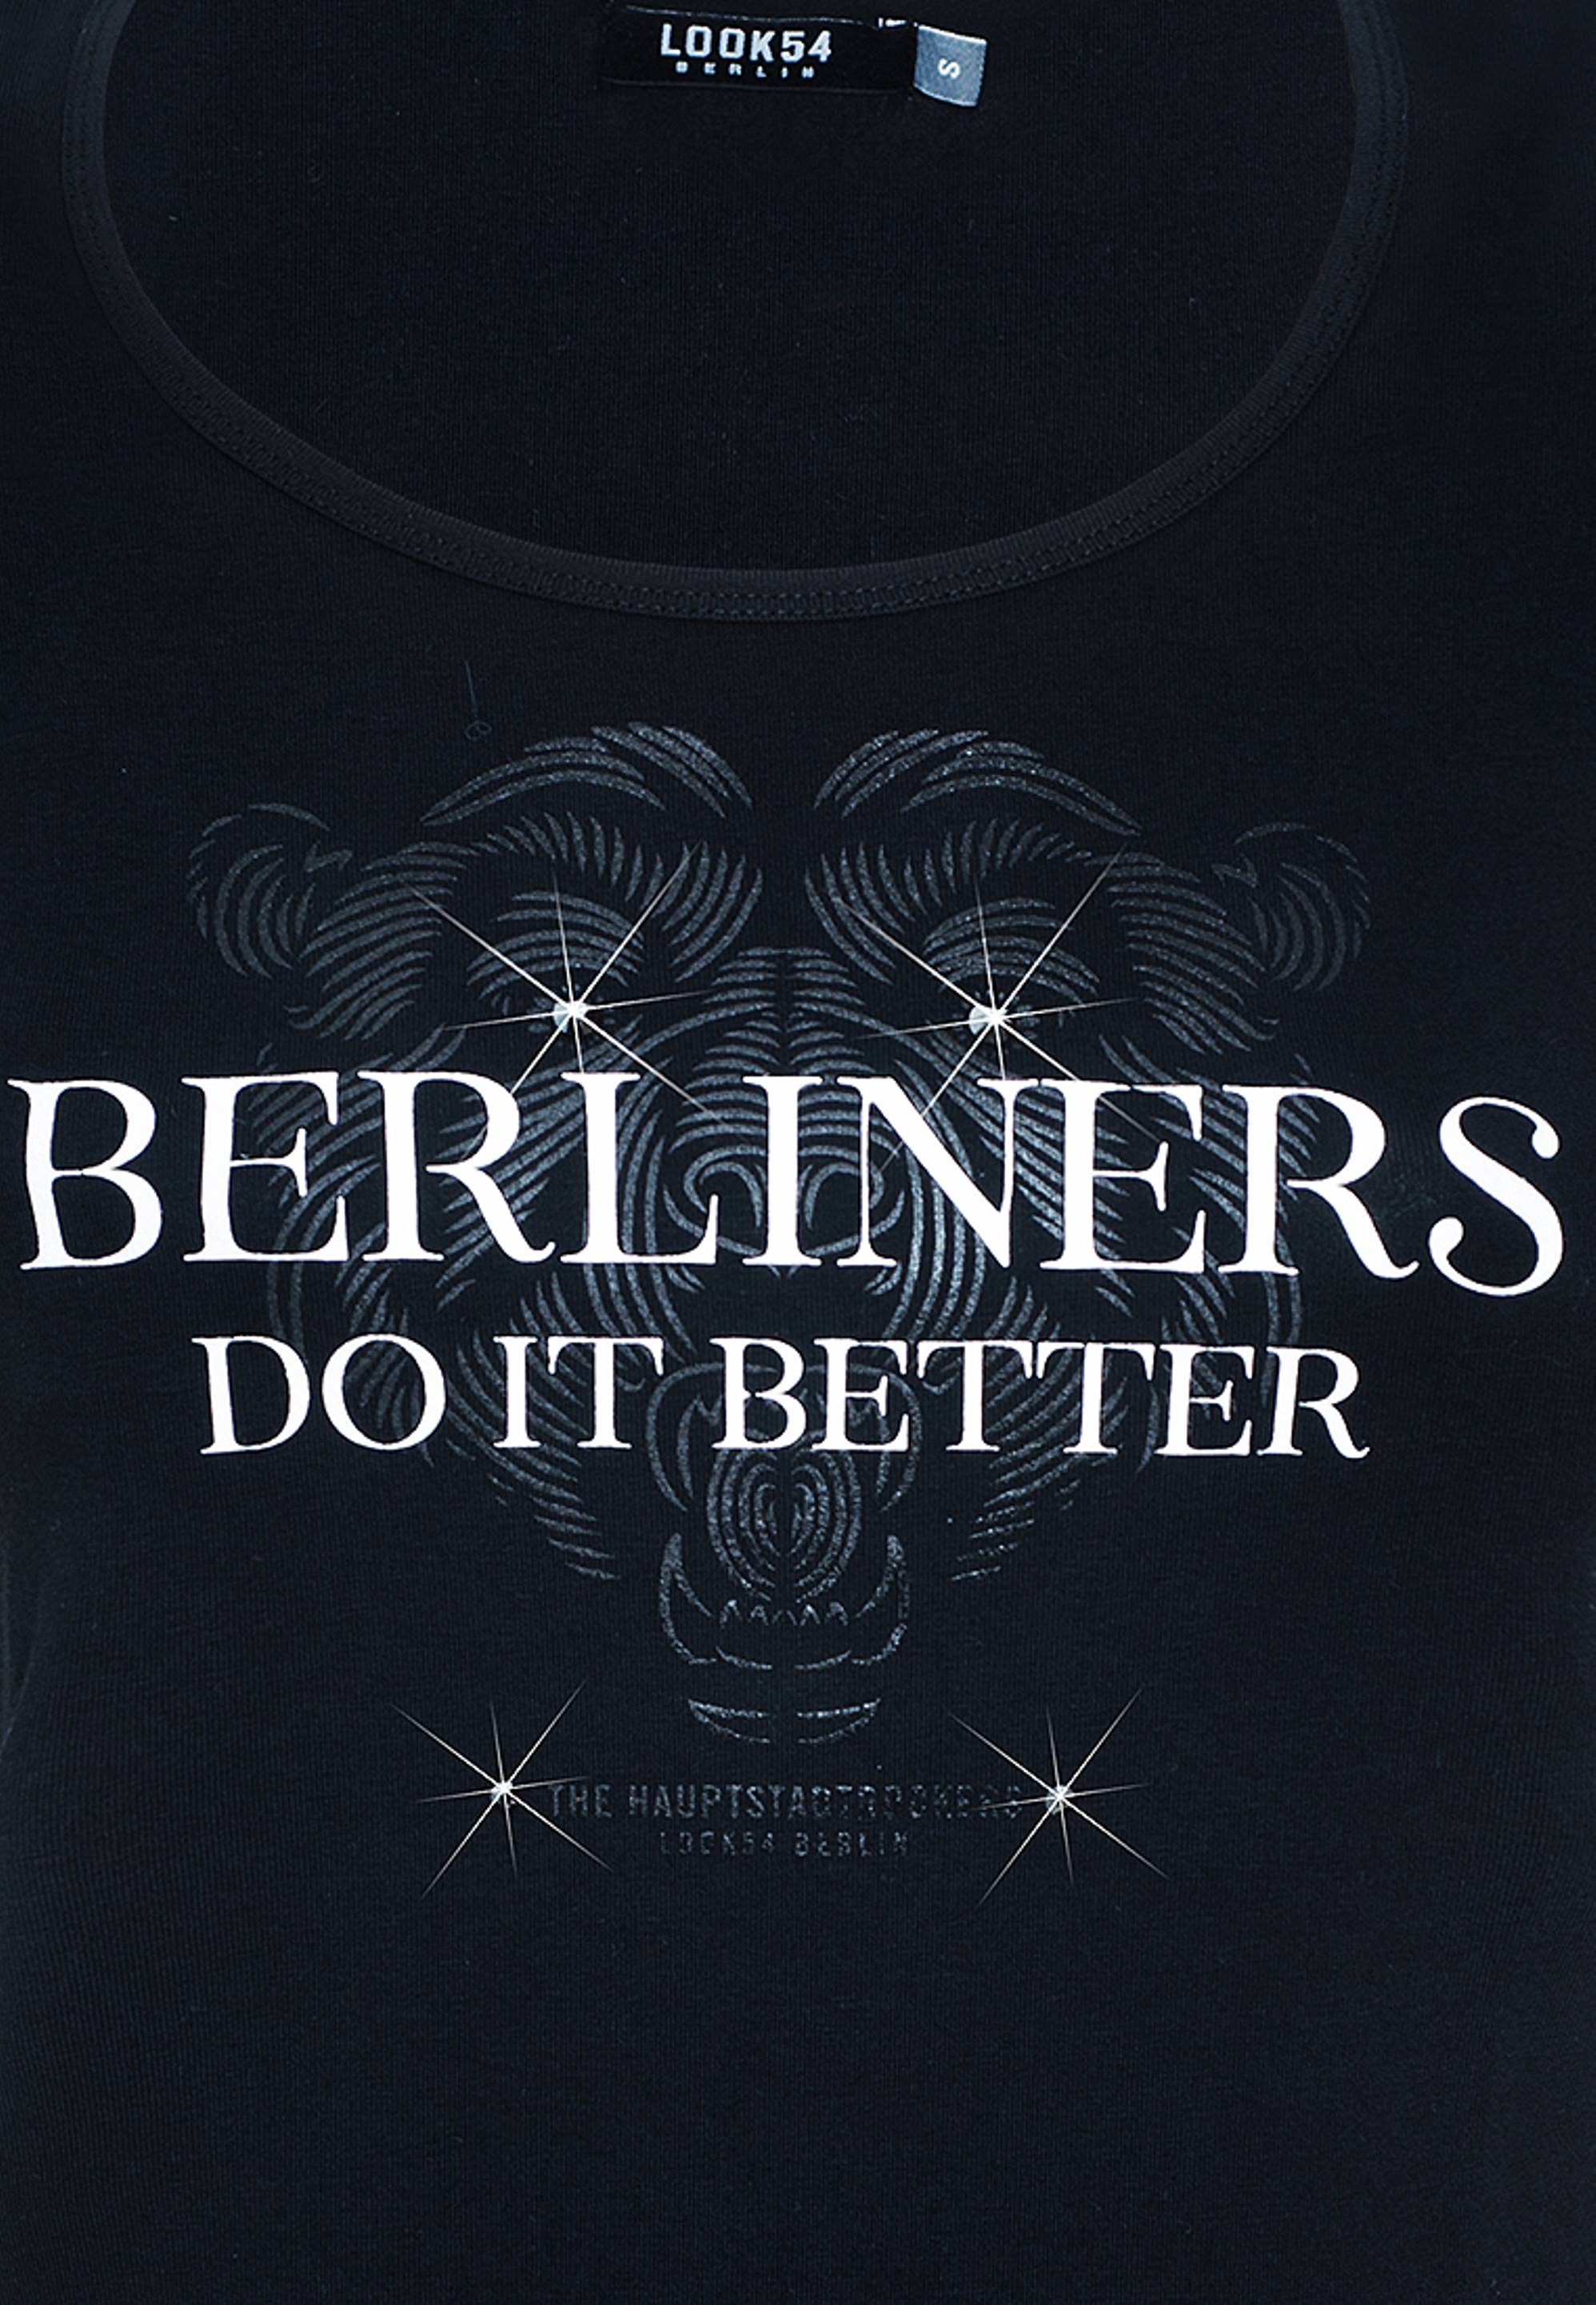 Berliners do it better - Shirt